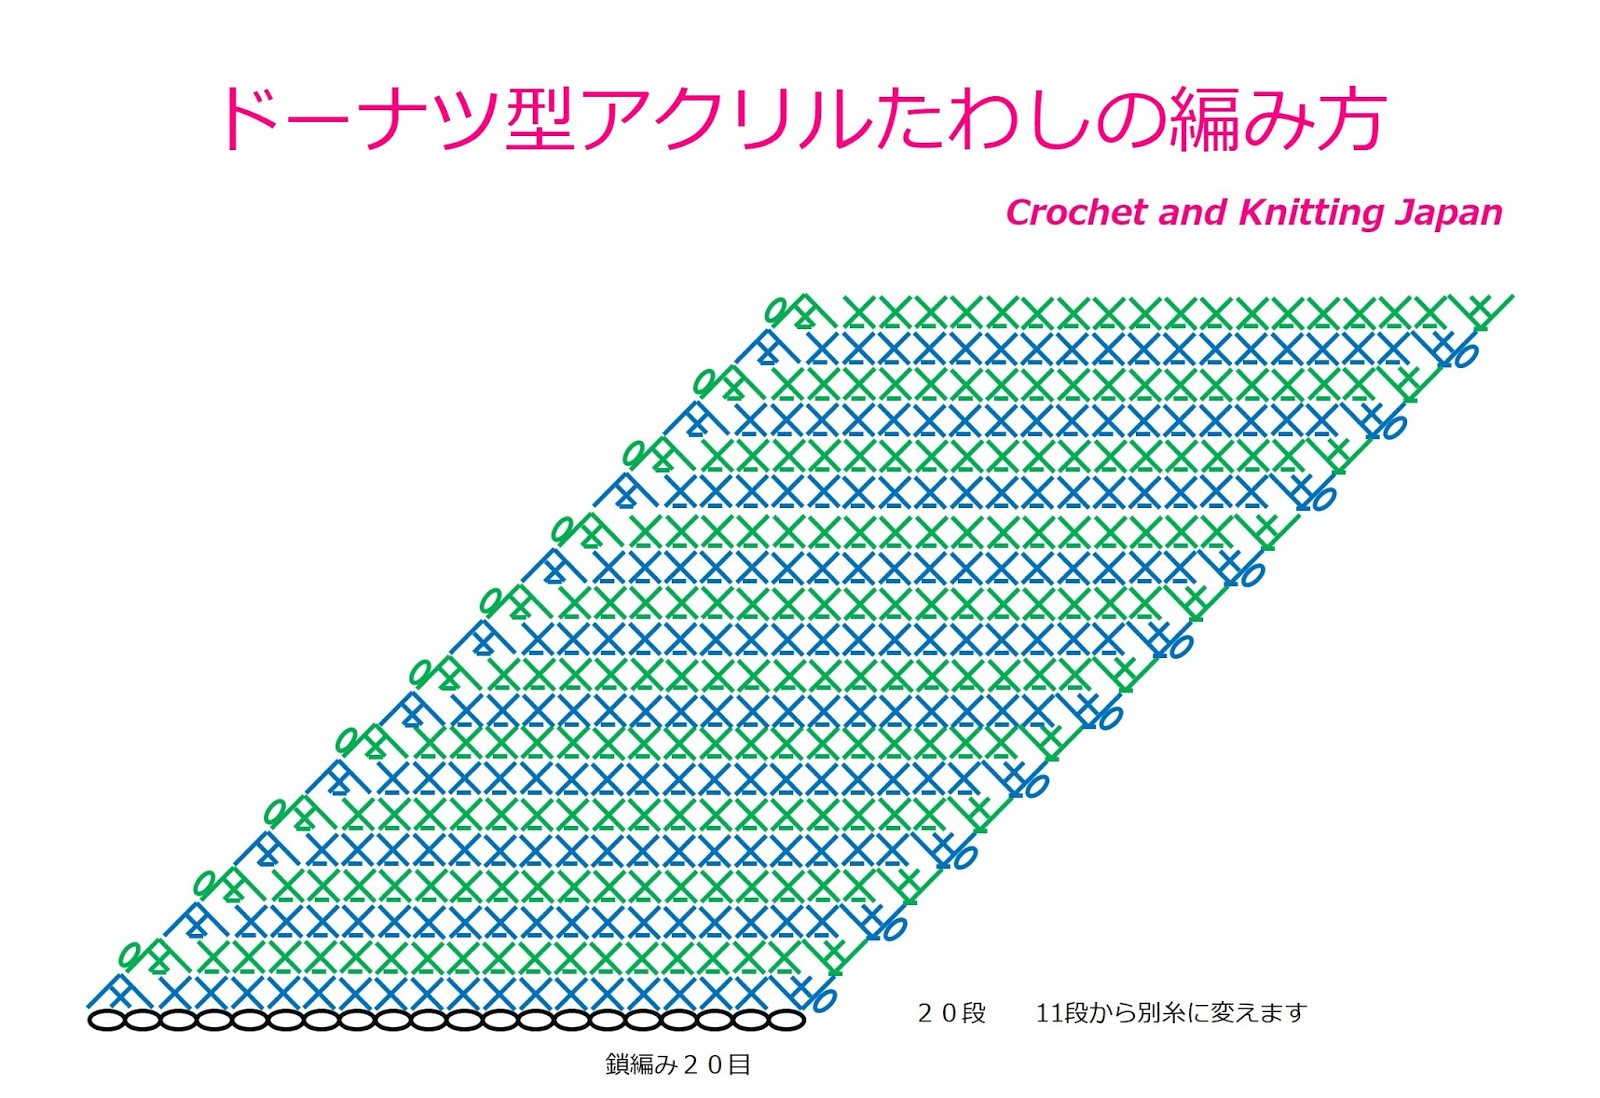 かぎ編み Crochet Japan クロッシェジャパン かぎ針編み ドーナツ型アクリルたわしの編み方1 2 Crochet Donut Twashi 編み図 字幕解説 Crochet And Knitting Japan